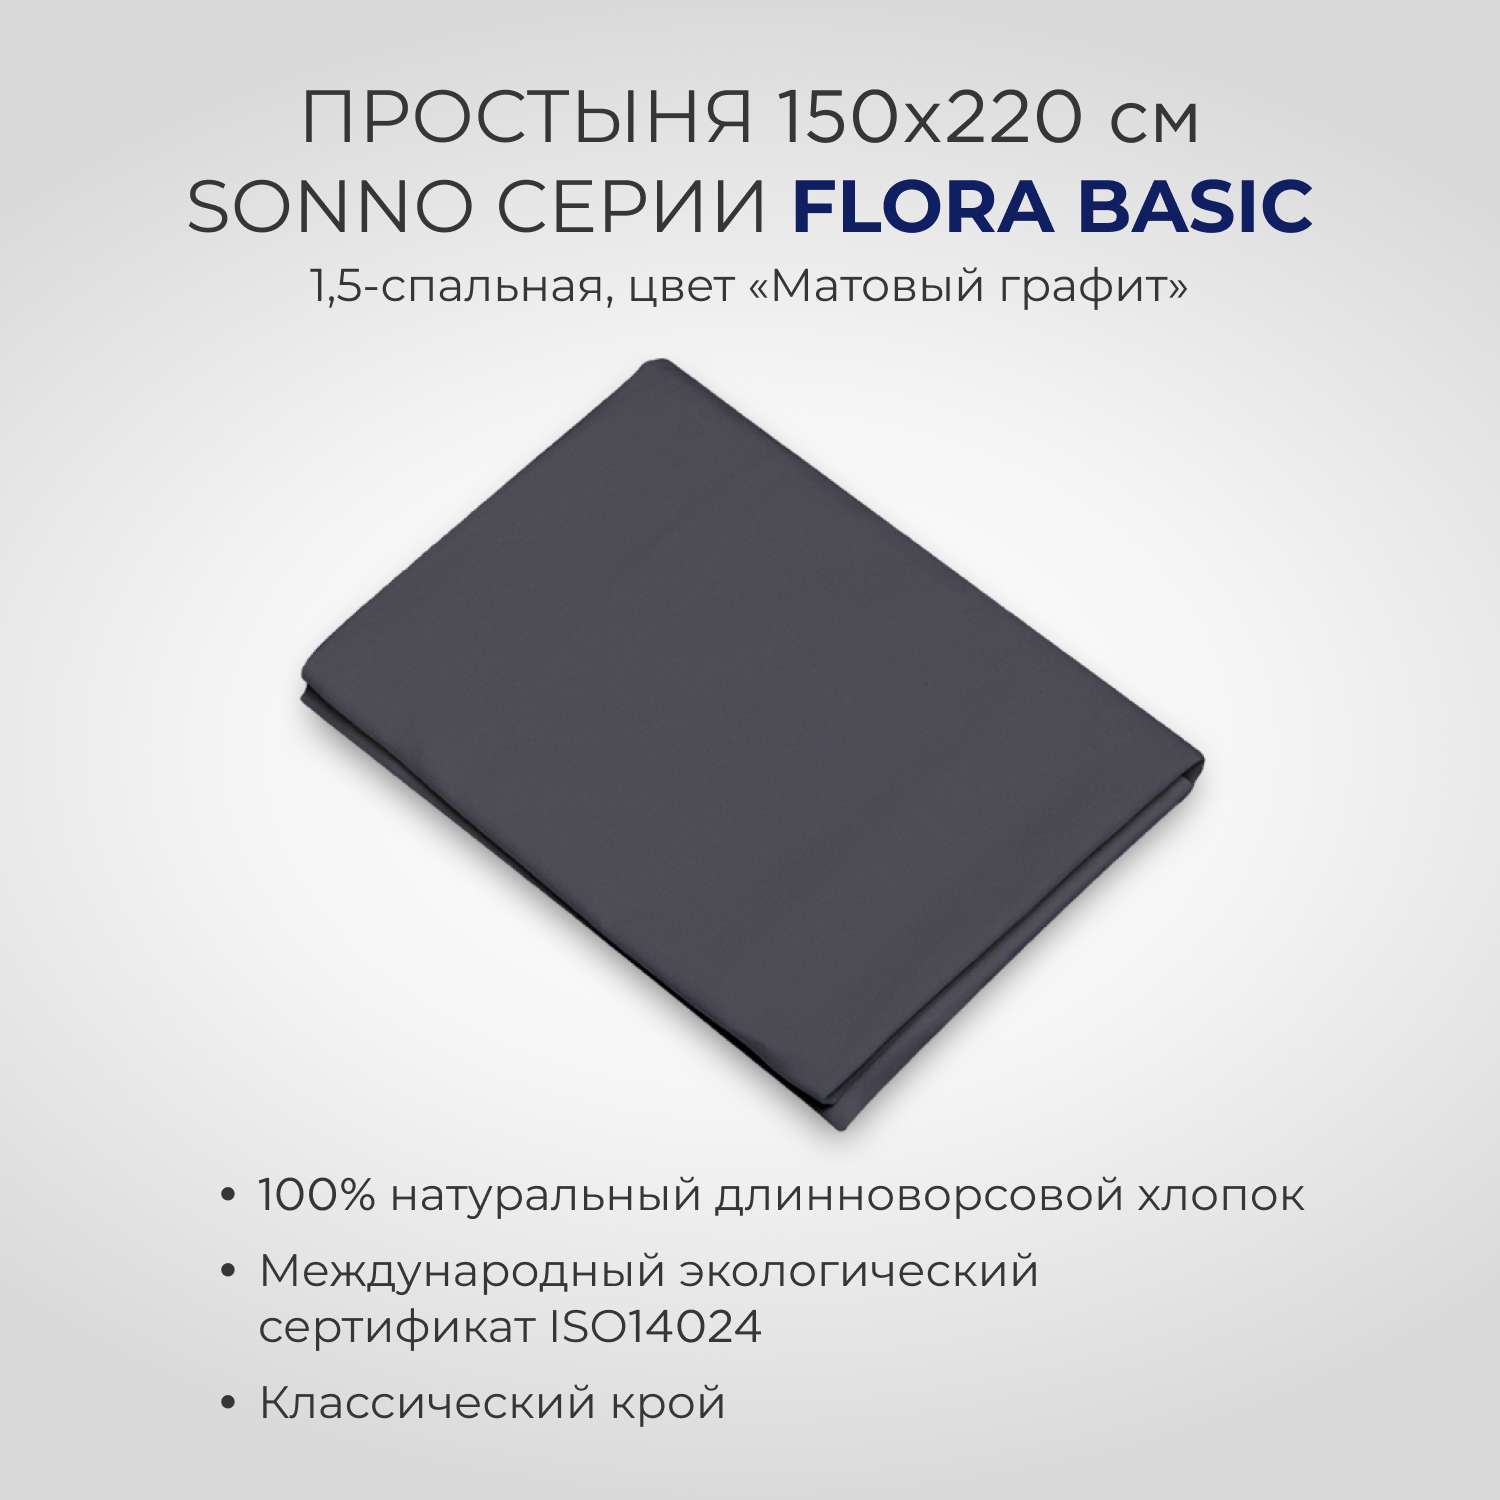 Комплект постельного белья SONNO FLORA BASIC 1.5-спальный цвет Матовый графит - фото 4